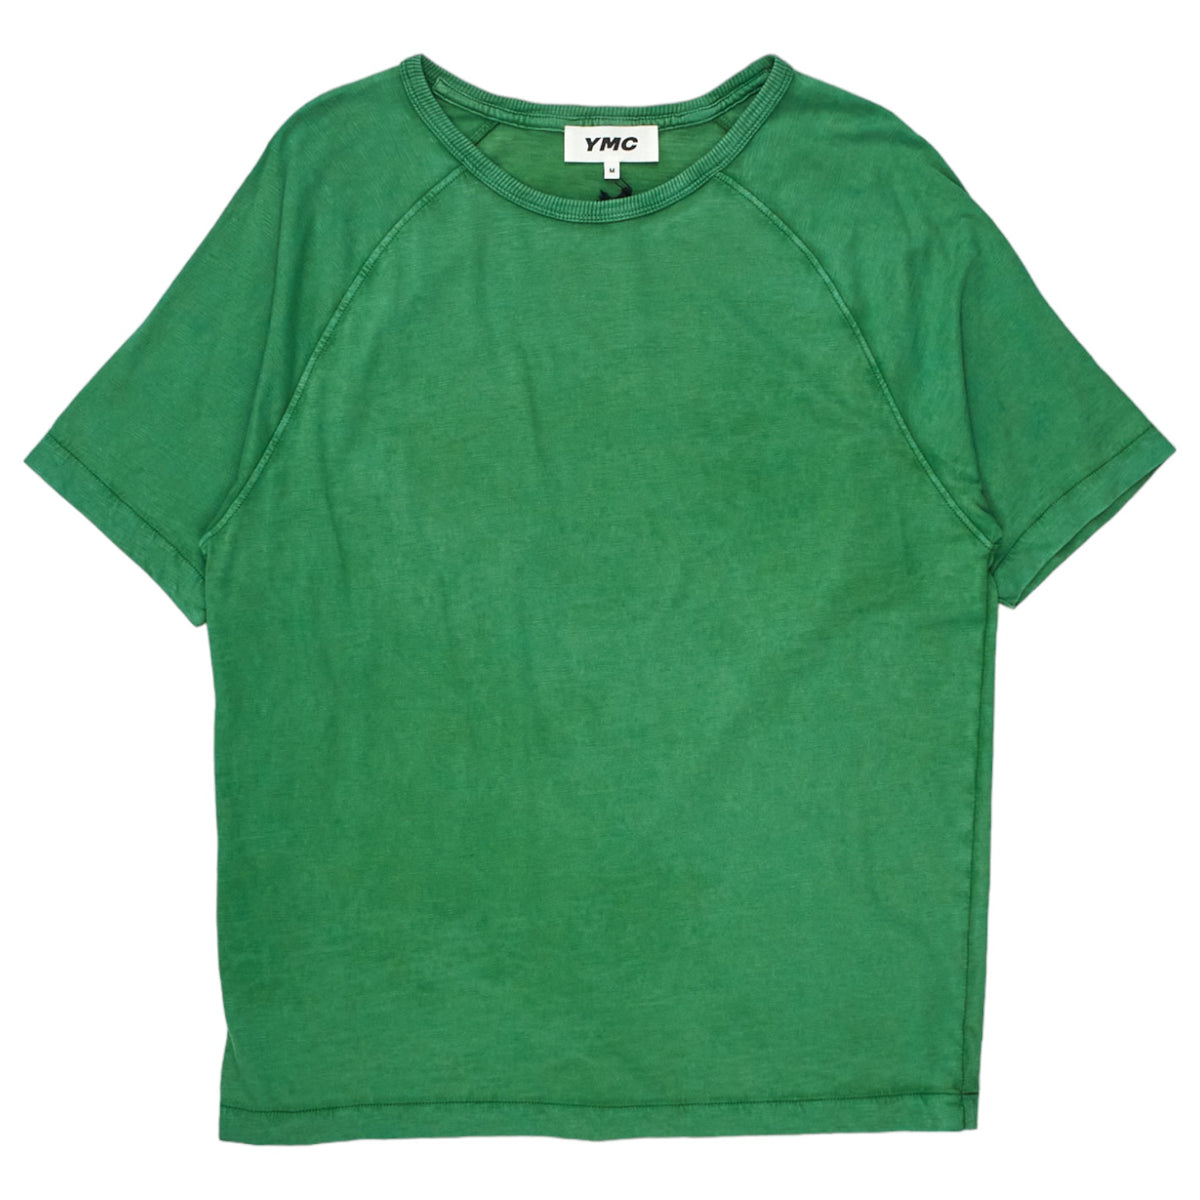 YMC Abundant Green T Shirt